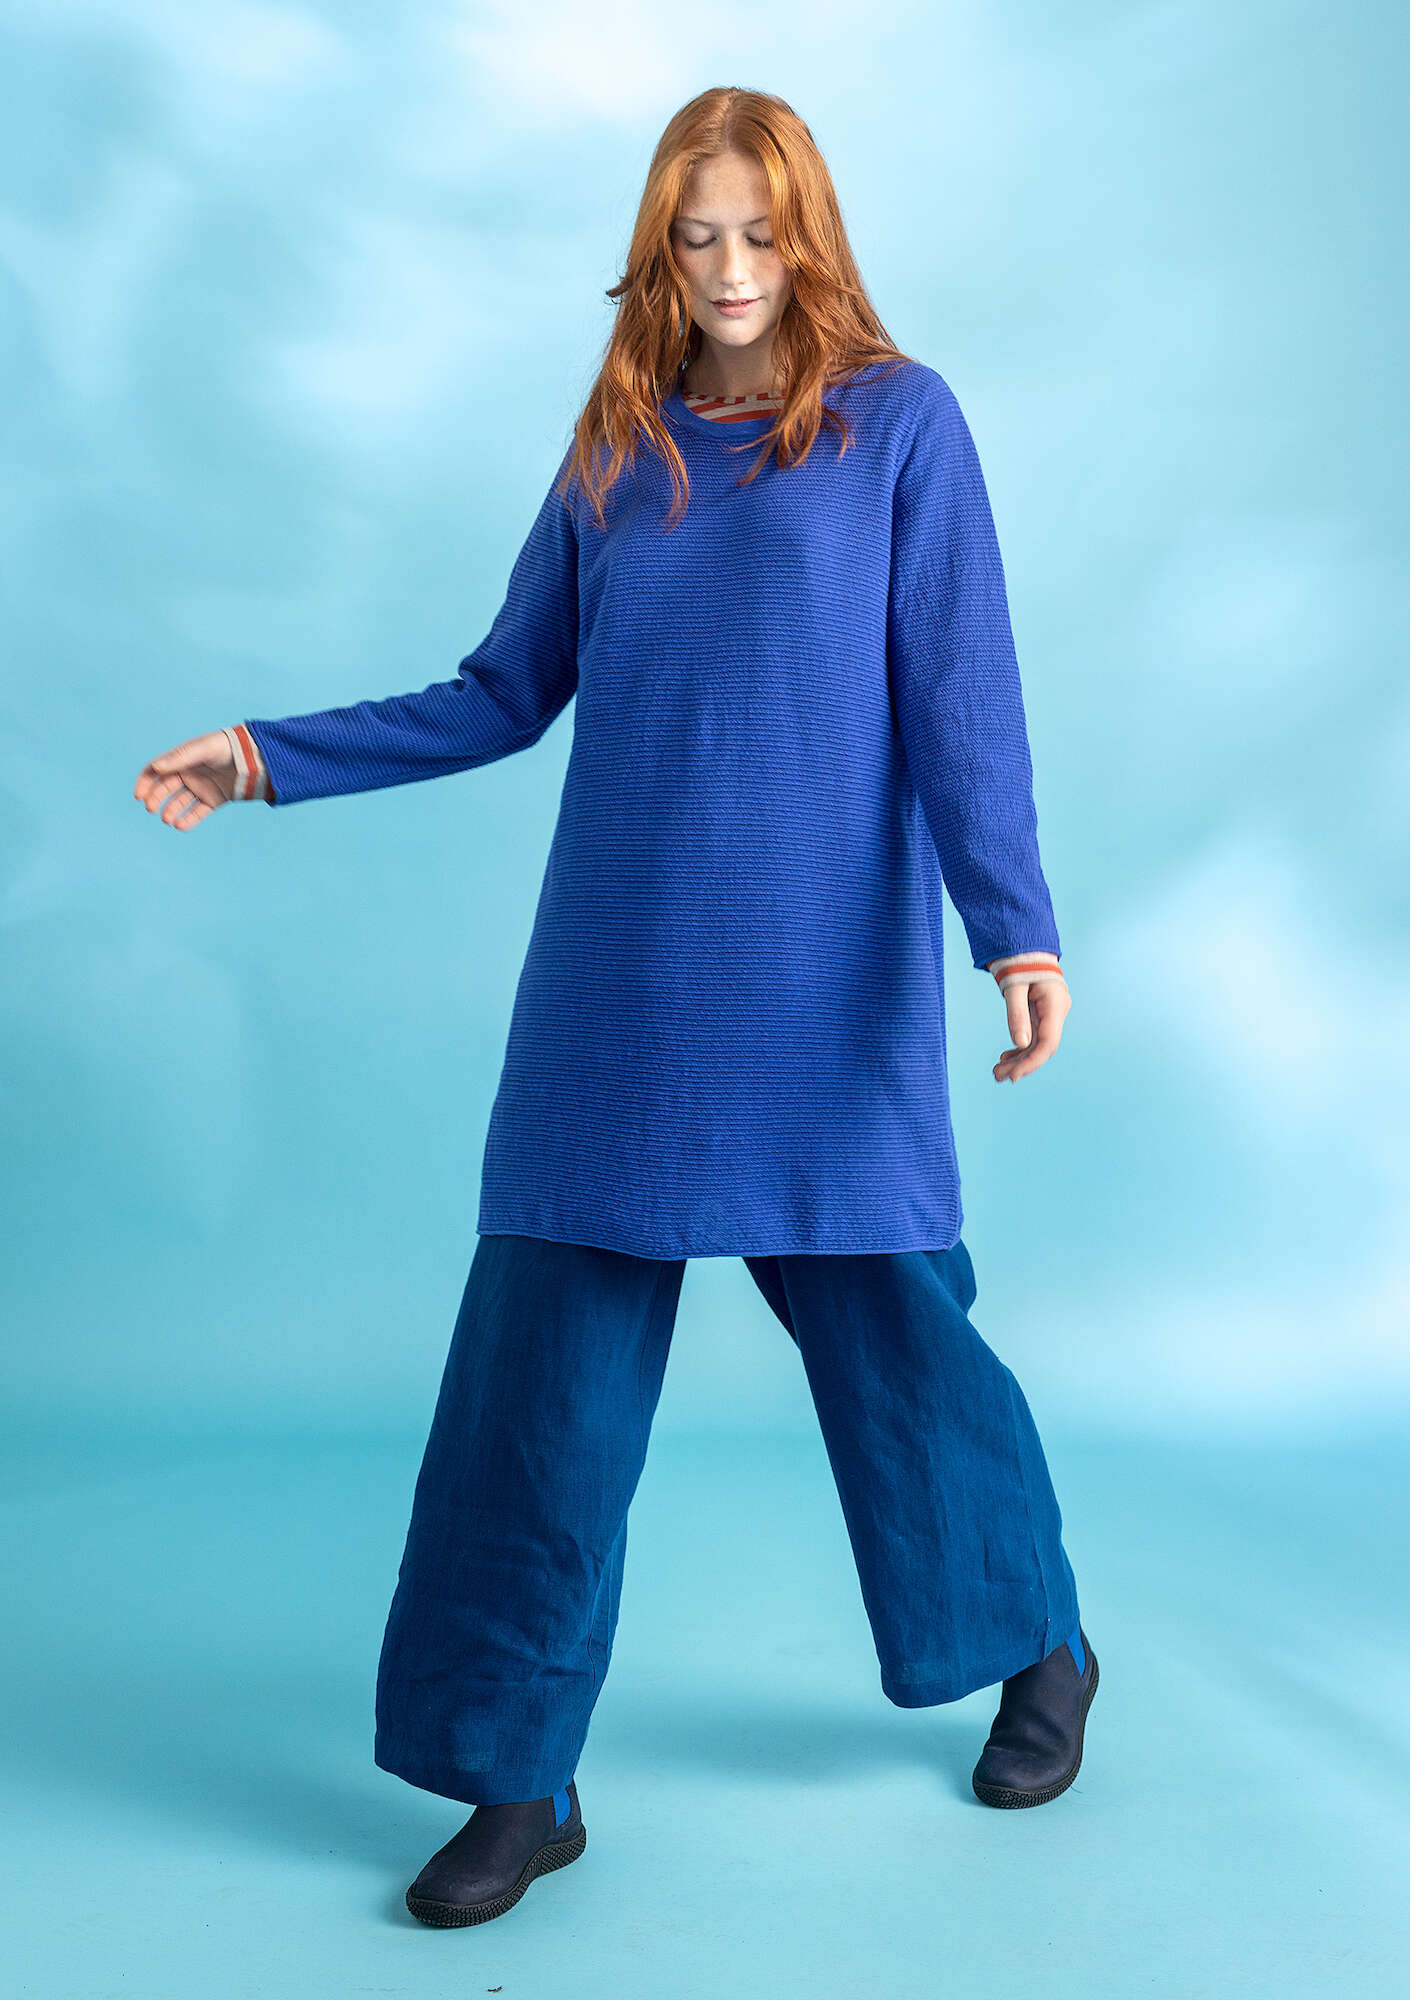 Tunic in linen/cotton brilliant blue